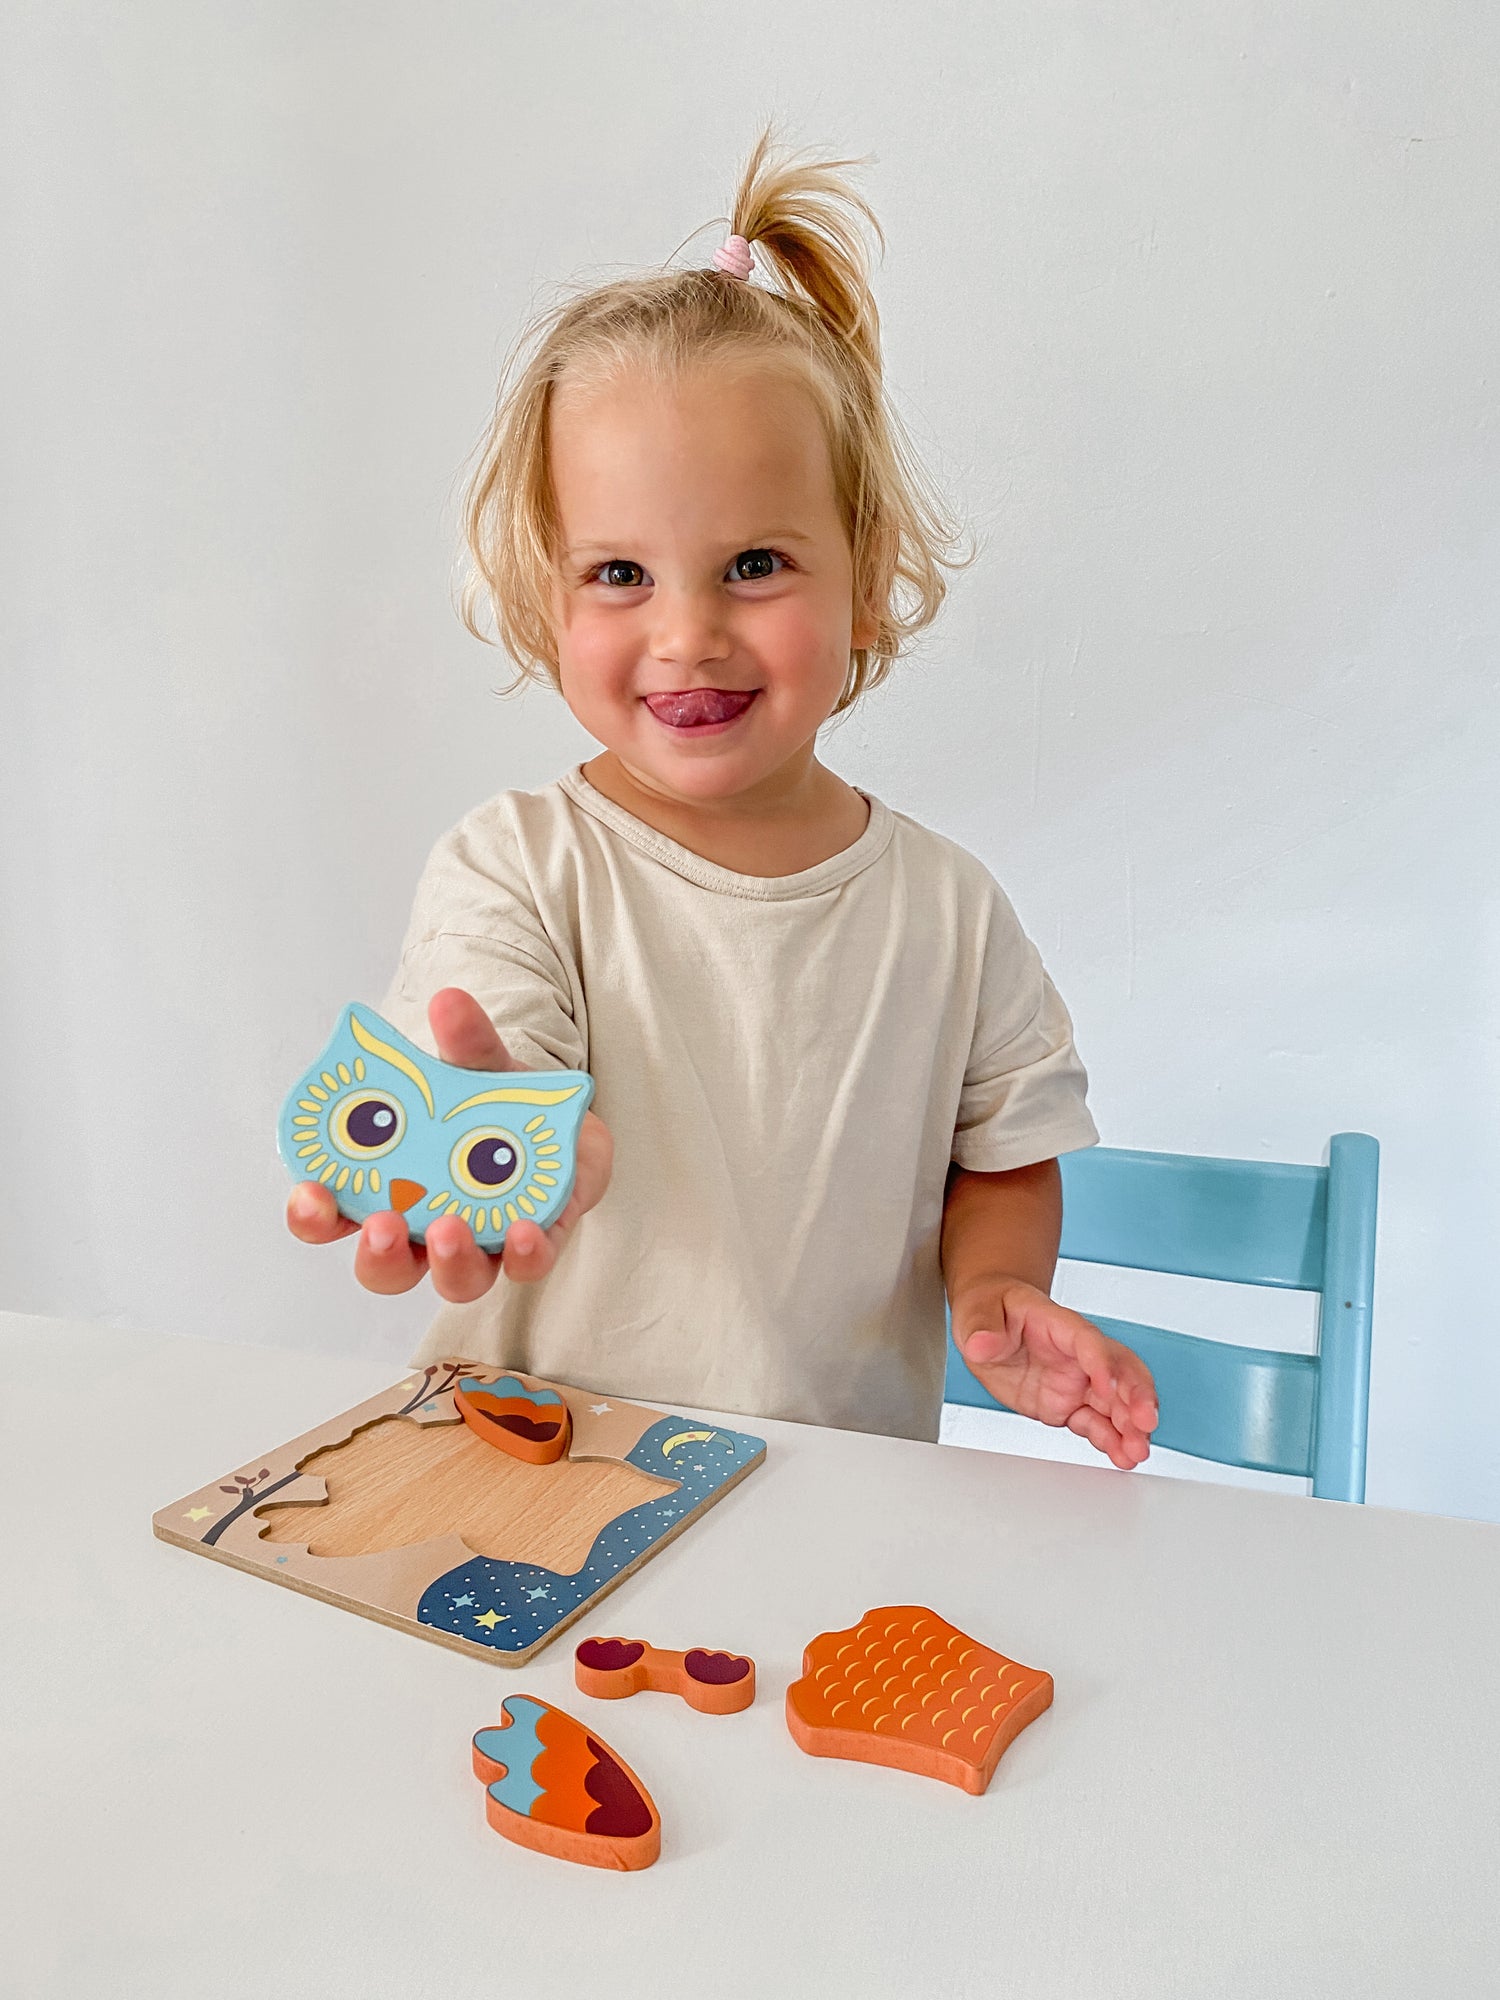 What are Montessori toys? 